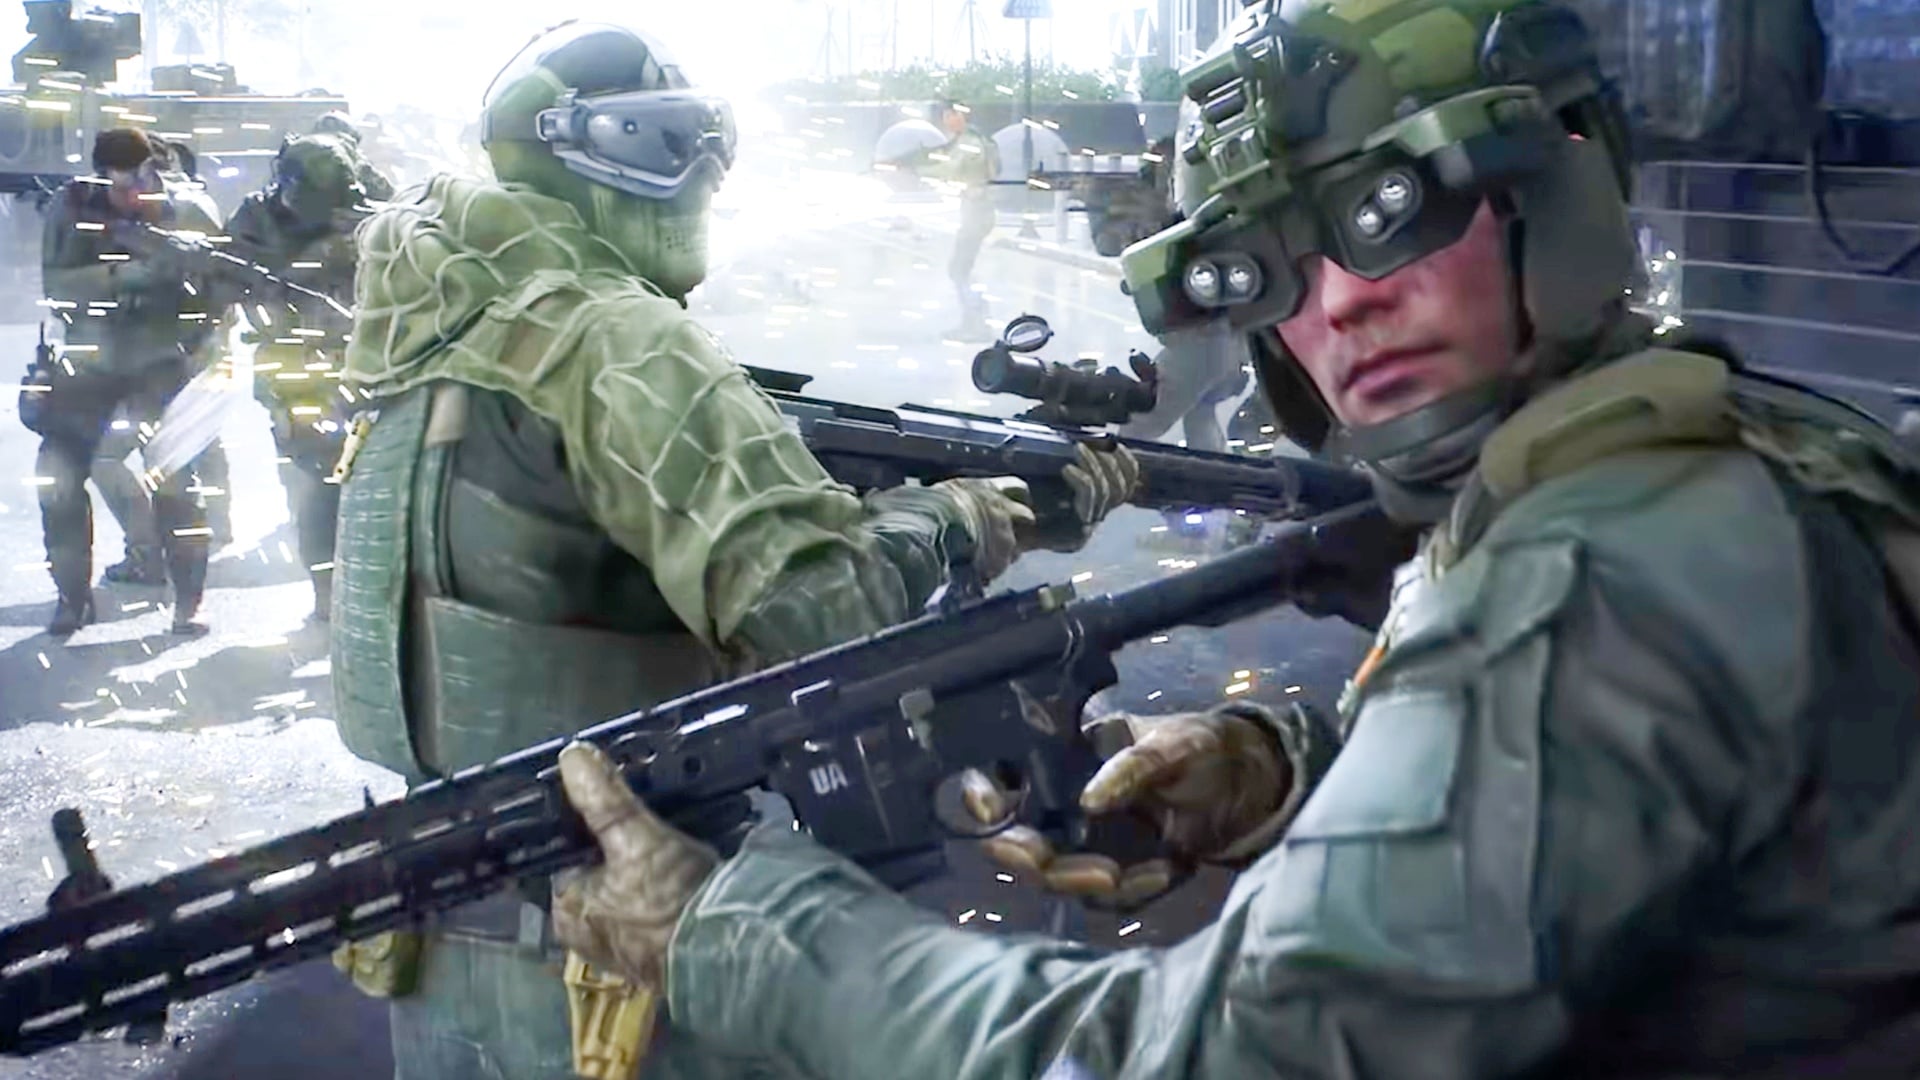 Солдат слева на фотографии держит в руках DSR-1. Винтовка имеет держатель магазина перед спусковым крючком для быстрой перезарядки